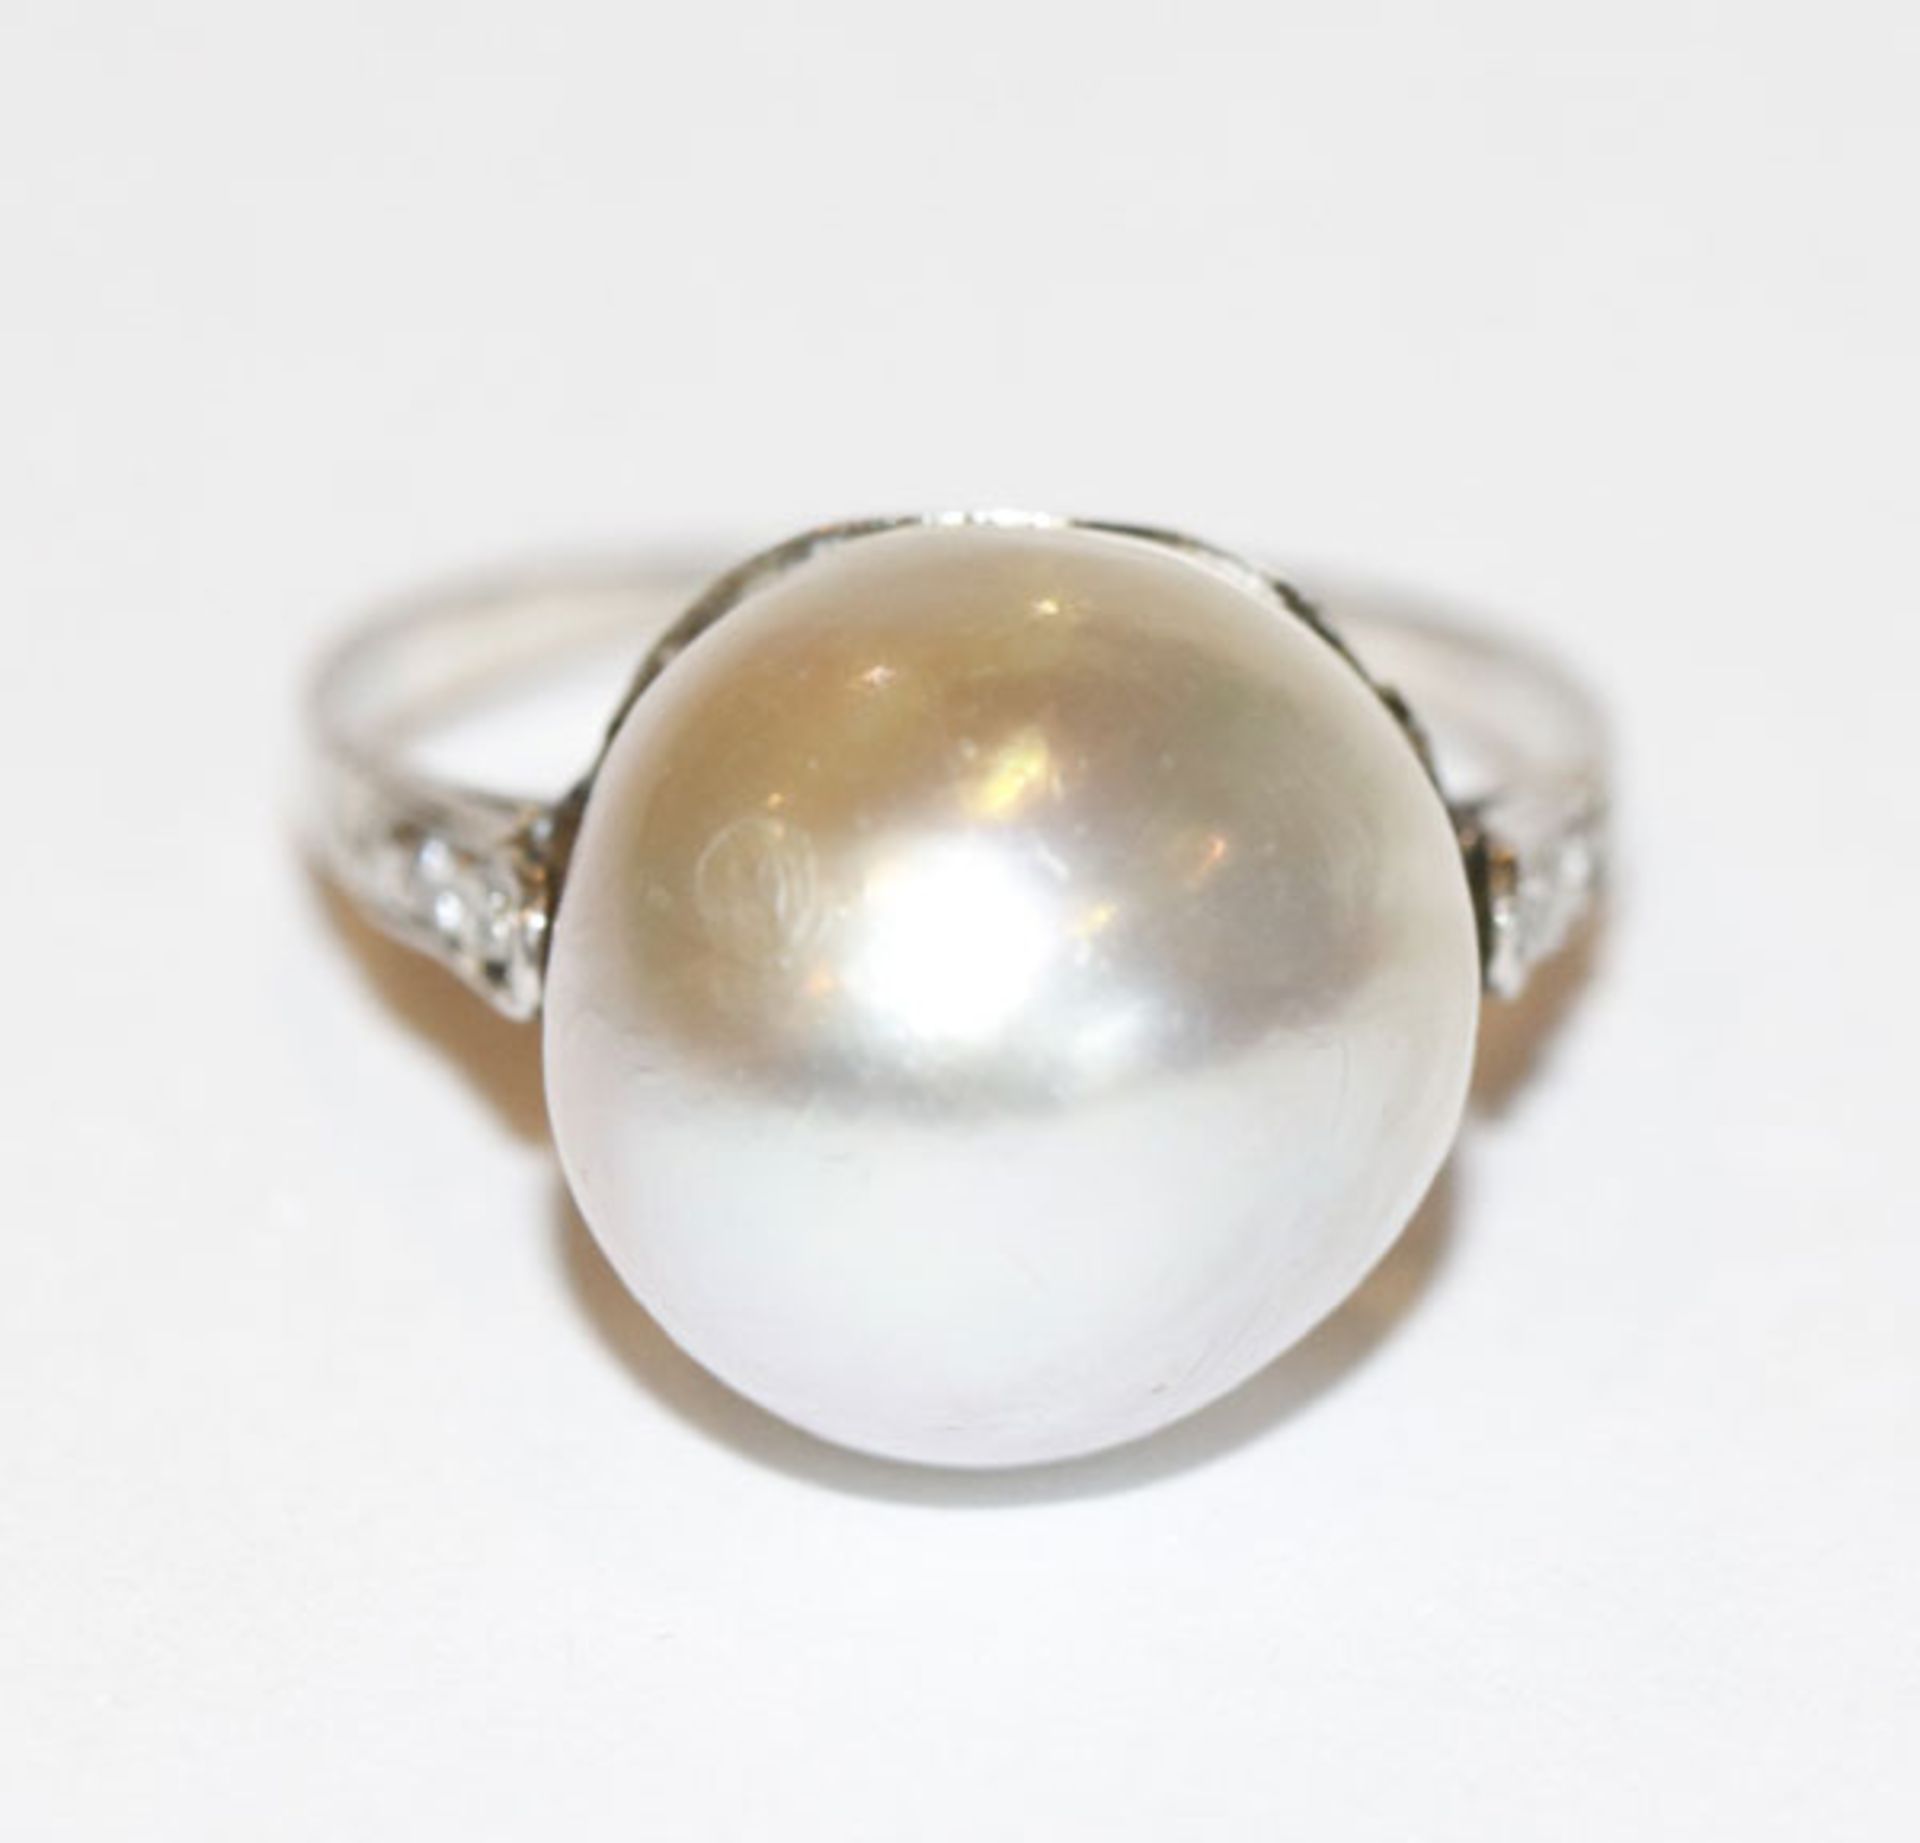 18 k (geprüft) Weißgold Ring mit Perle und 6 Diamanten an der Ringschiene, Gr. 53